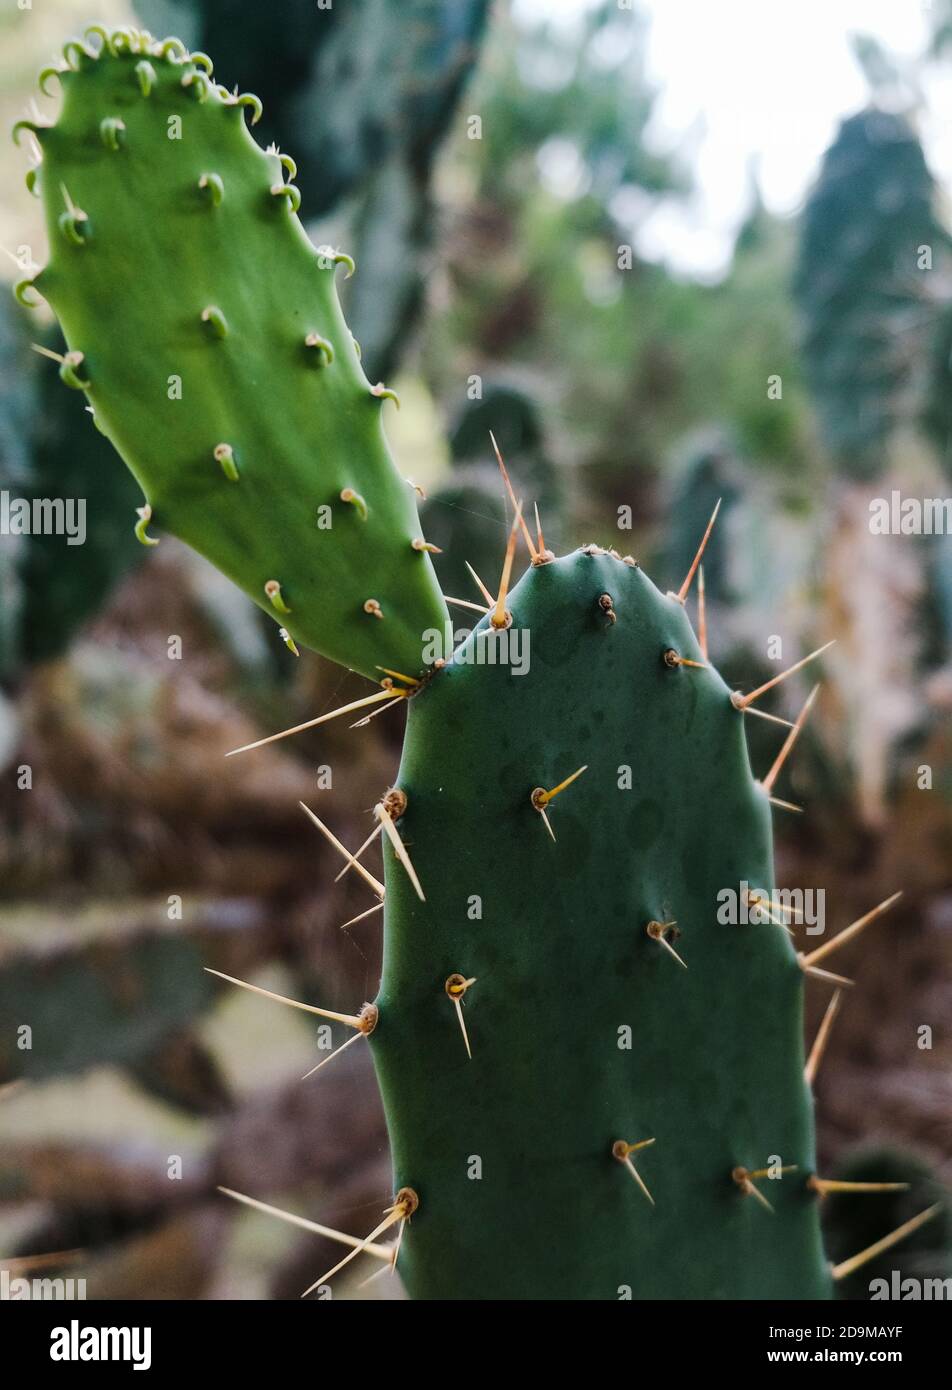 Hermosos suculentos tropicales. Campo de cactus de pera espinosa ciego. Vista de cerca de hojas de cactus verdes con espinas afiladas. Cactuses naturales en crecimiento al aire libre Foto de stock